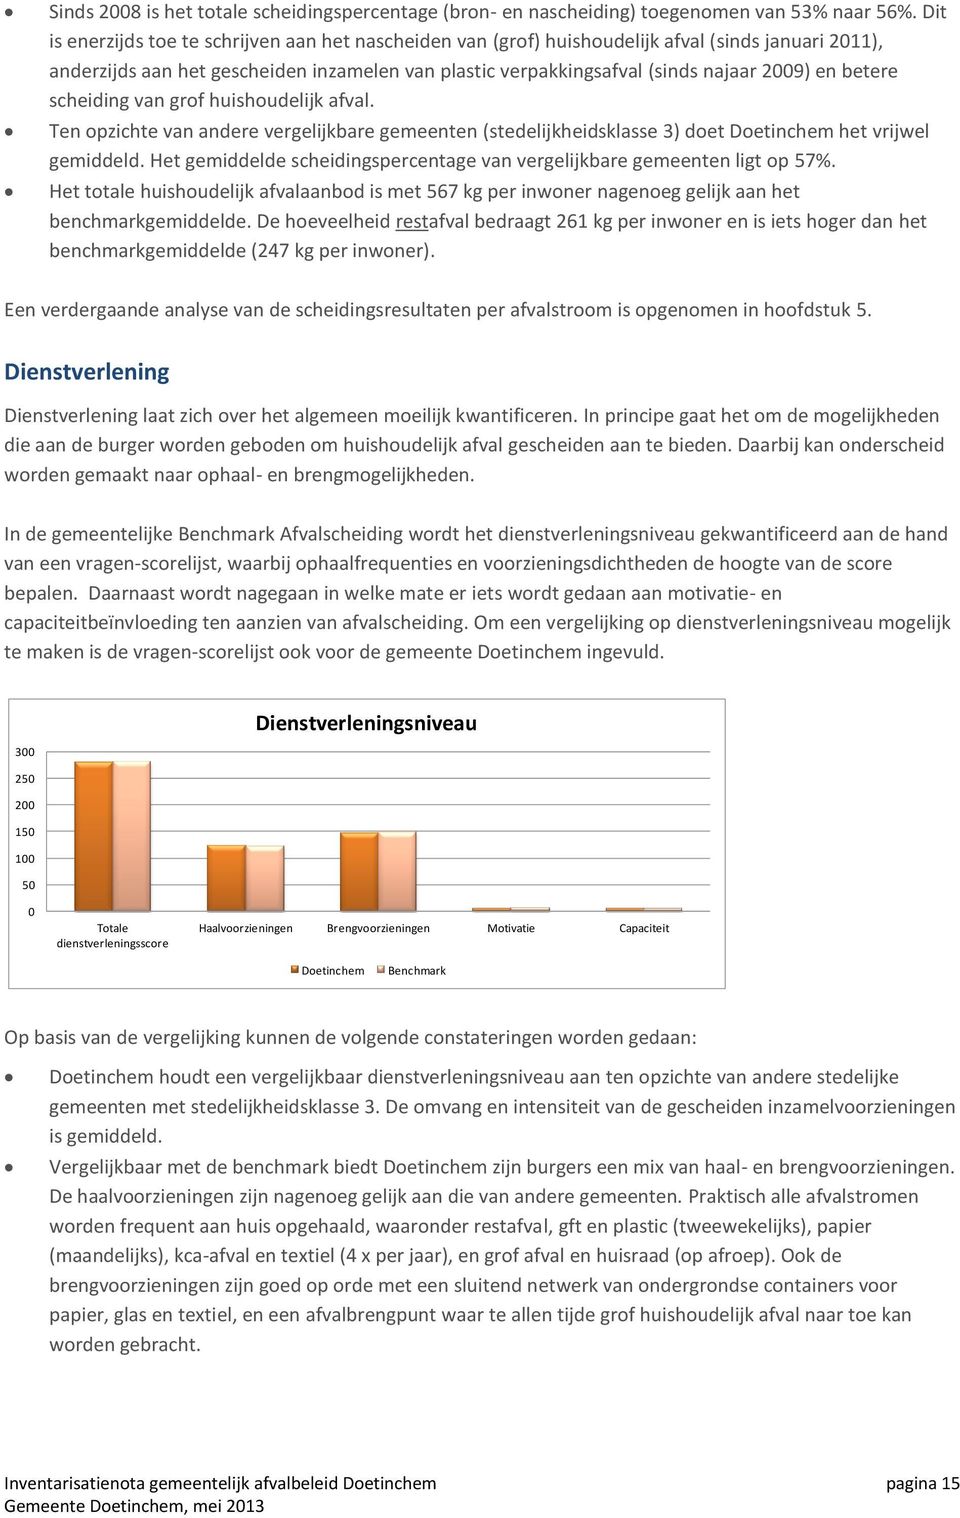 betere scheiding van grof huishoudelijk afval. Ten opzichte van andere vergelijkbare gemeenten (stedelijkheidsklasse 3) doet Doetinchem het vrijwel gemiddeld.